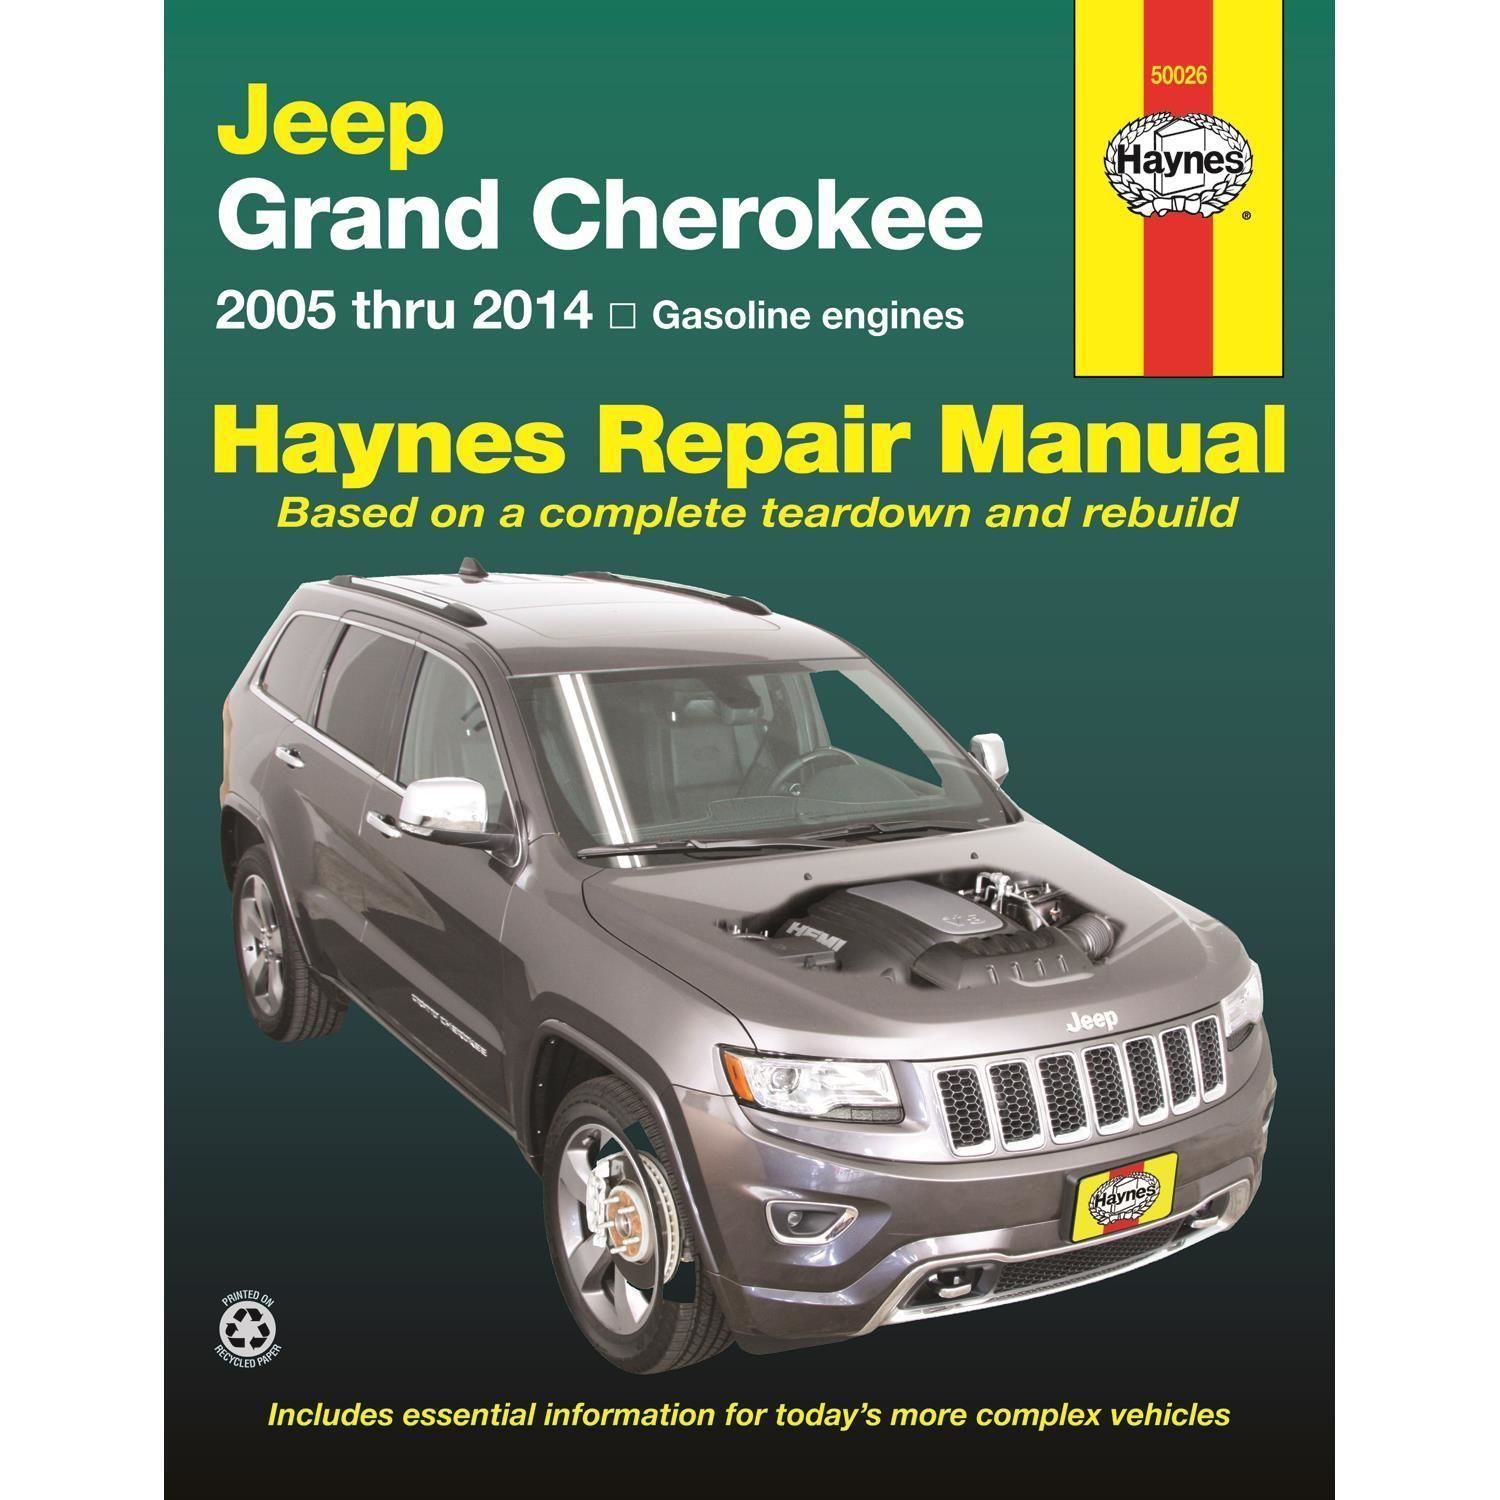 Haynes Vehicle Repair Manual 50026 